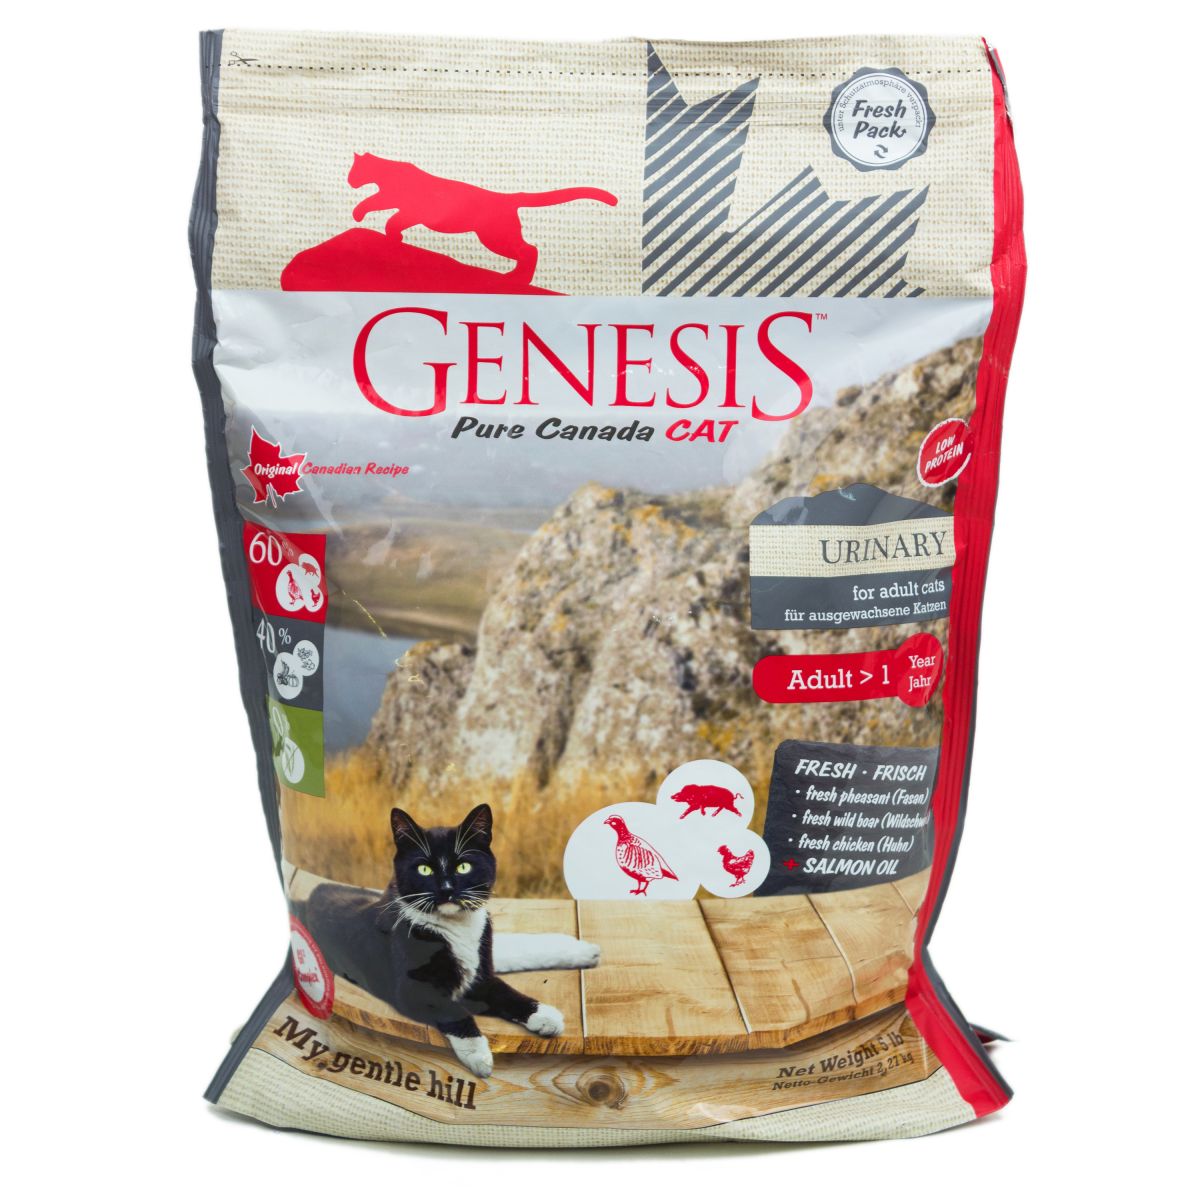 Genesis pure canada my gentle hill urinary для взрослых кошек, склонных к проблемам мочеполовой системы с кабаном, фазаном и курицей